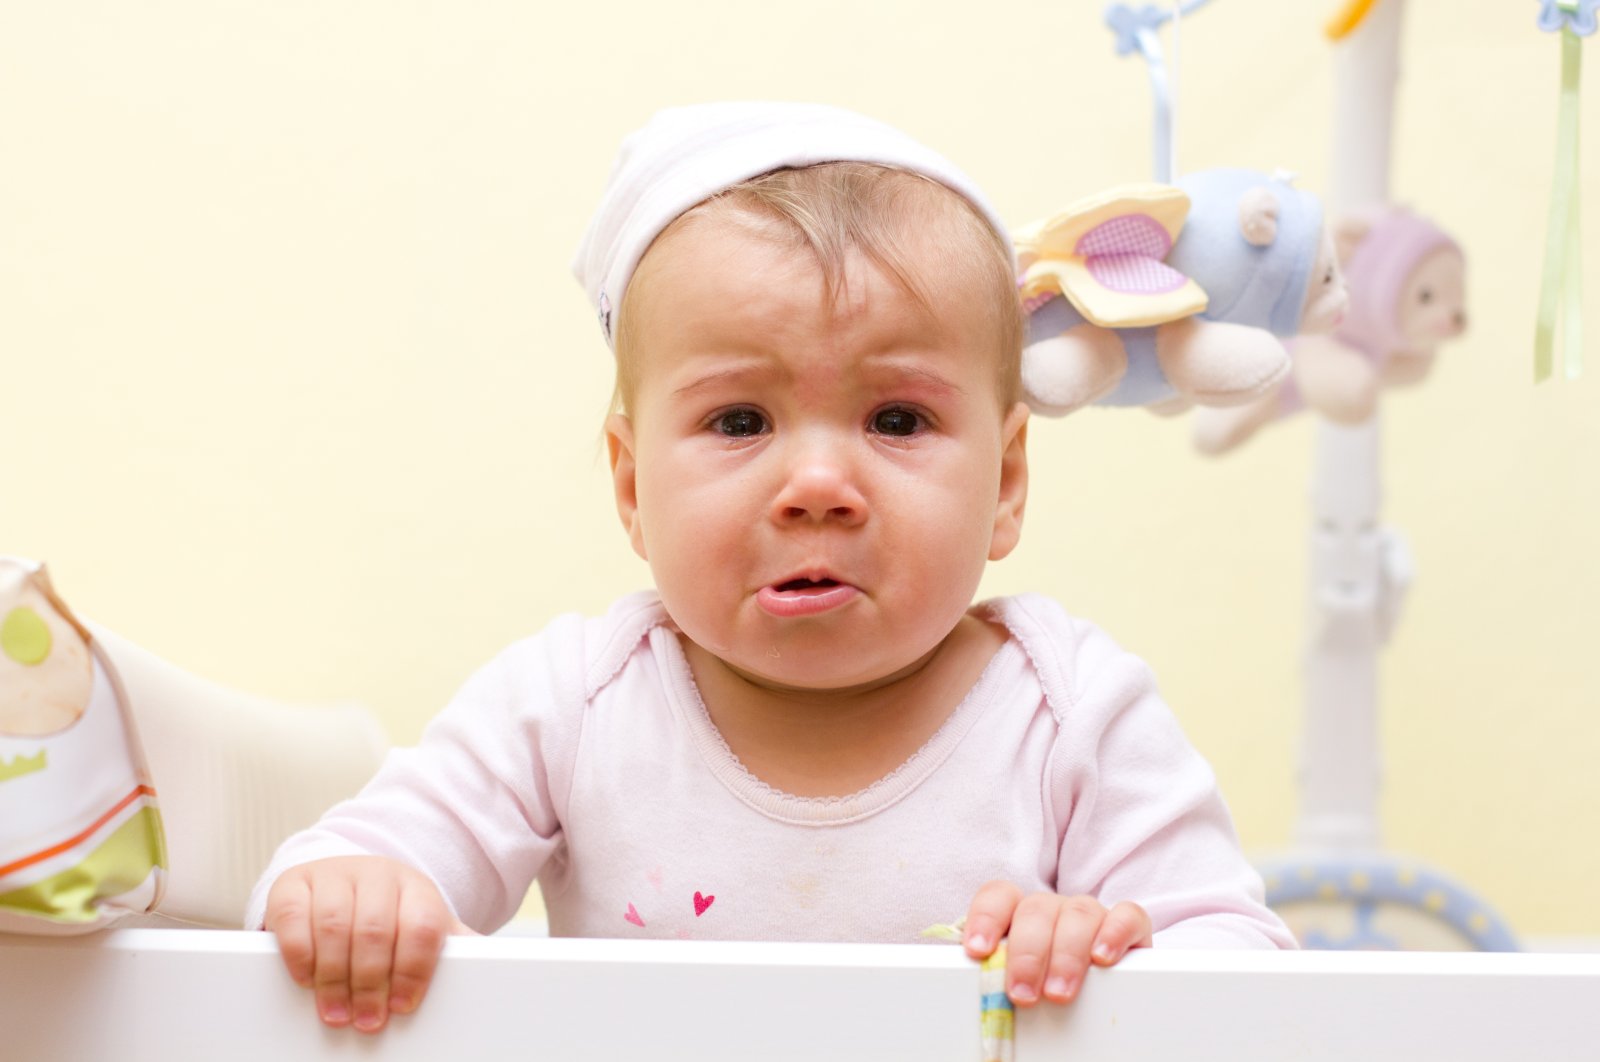 Hanya 5 menit berjalan kaki: Sains menjawab cara menenangkan bayi yang menangis